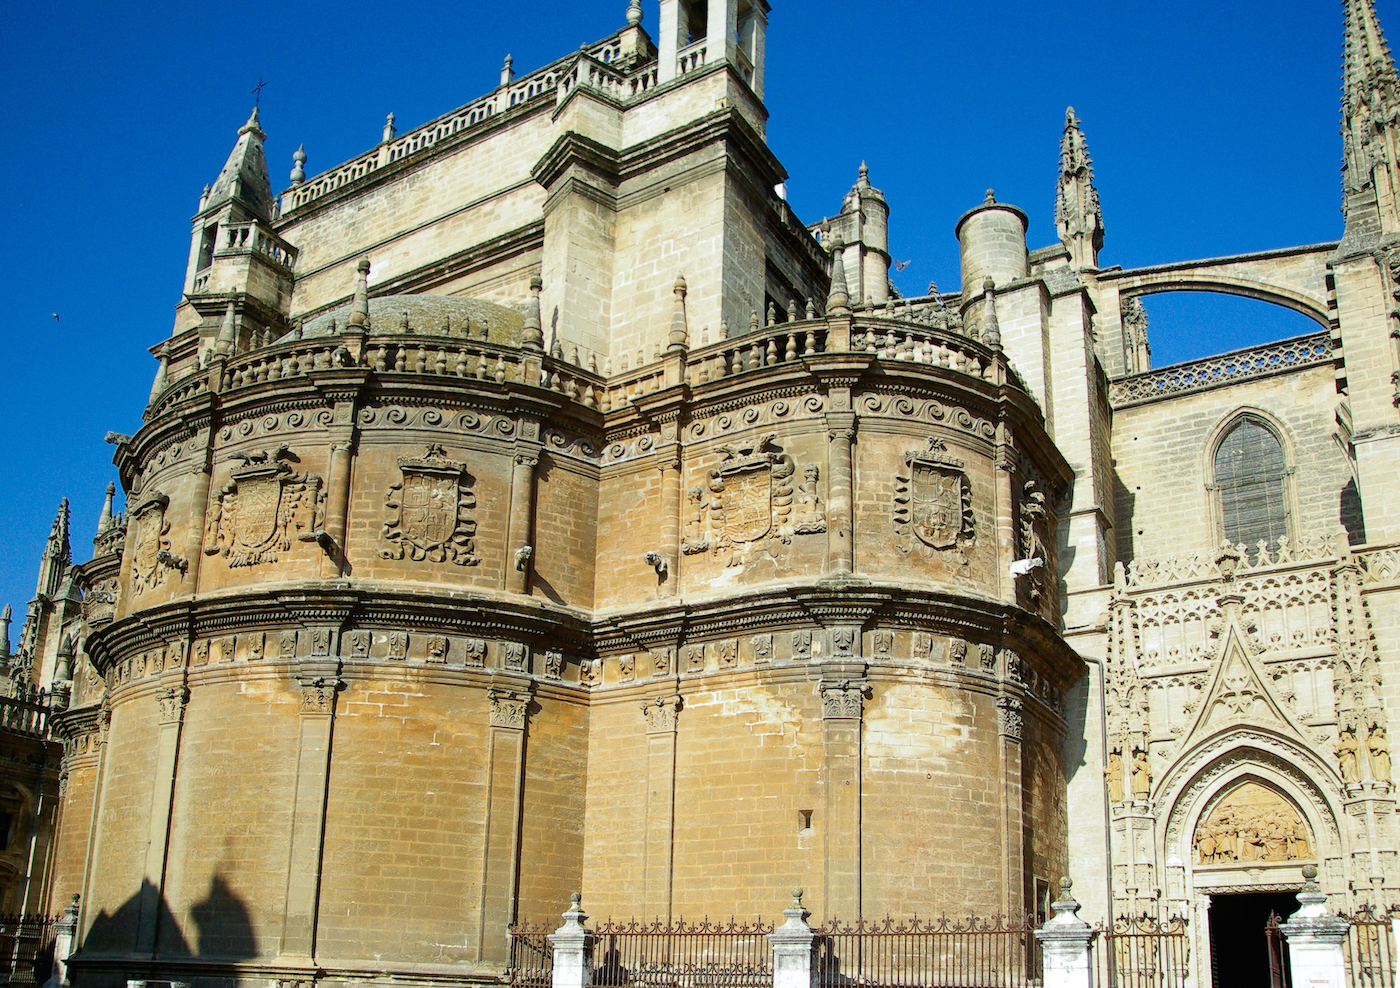 Catedral de Sevilla. La verticalidad de la arquitectura gótica se logra a través de una serie de elementos (el arco apuntado, los contrafuertes y arbotantes, los pináculos, etc.) que dirigen las fuerzas peso de la estructura hacia el suelo y evitan que los muros se abran, retirándoles la función de ser muro de carga. Al estar el peso de la estructura soportado por este entramado de elementos en lugar de por los propios muros, como sí sucede en la arquitectura románica, se pueden abrir grandes ventanas alargadas y colocar extensas y profusas vidrieras que en el arte románico eran impensables porque se comprometía la estabilidad de la estructura